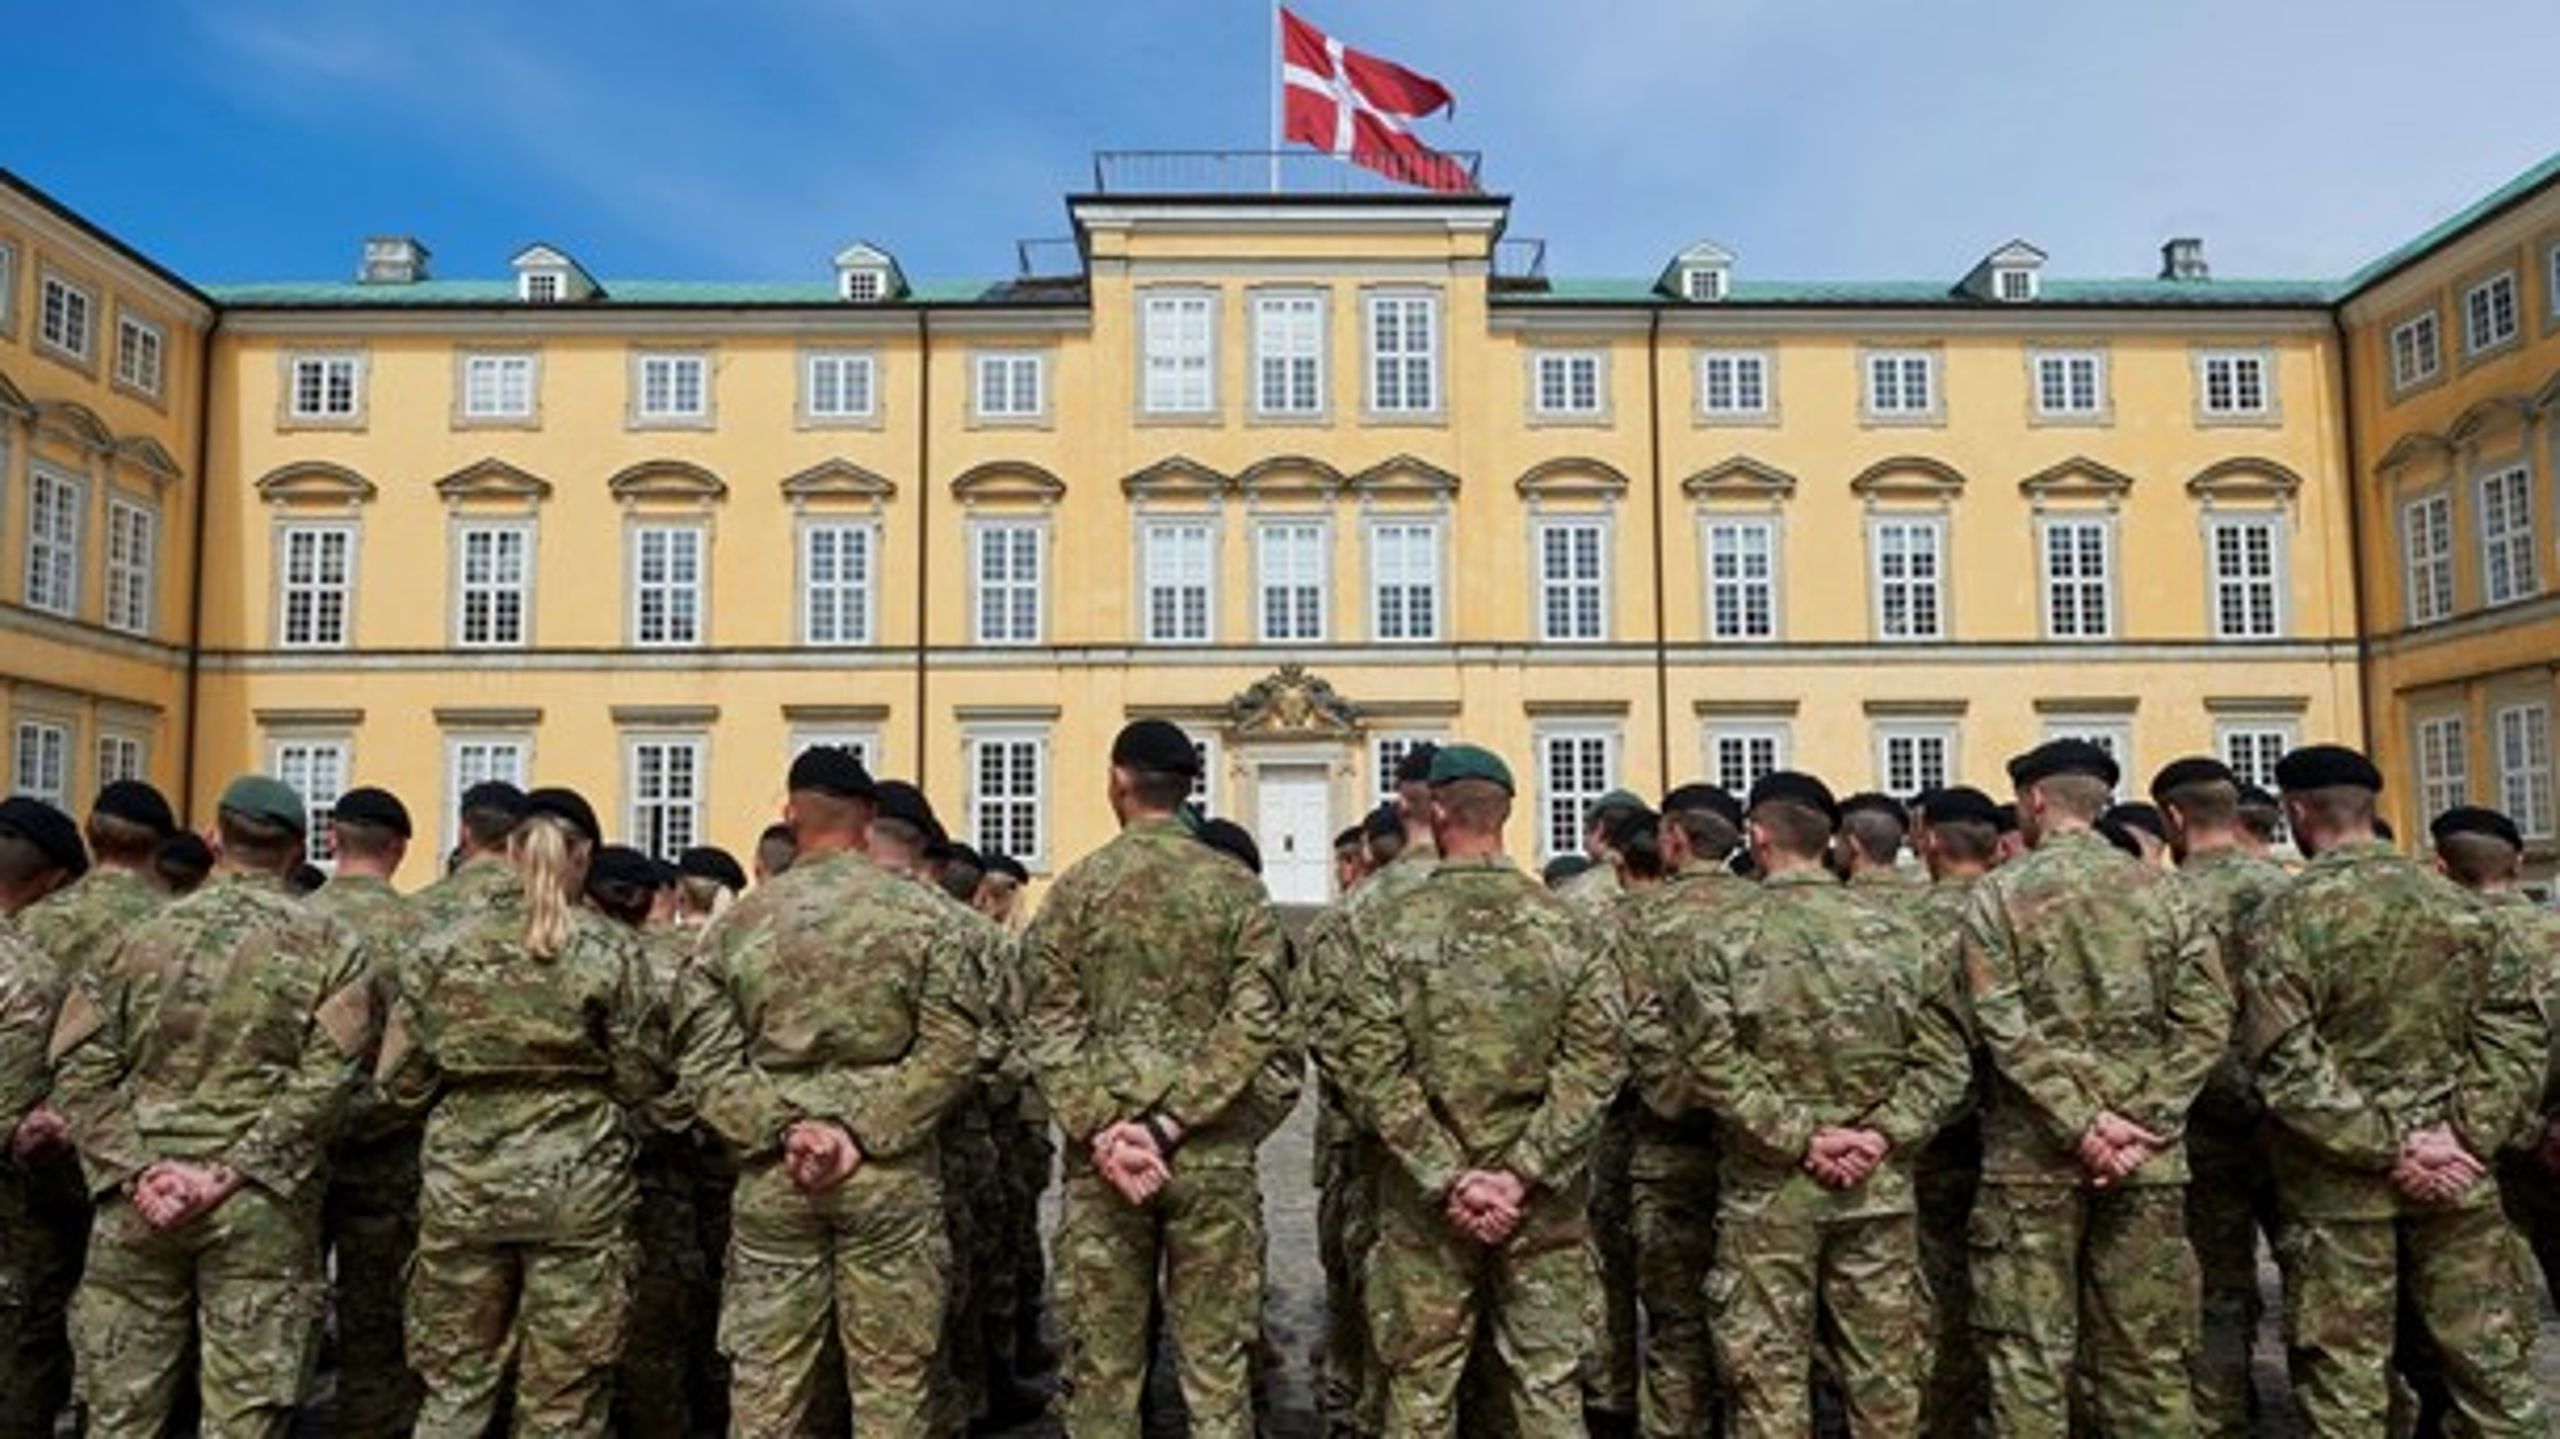 I mere end 150 år har Hærens Officersskole haft til huse på Frederiksberg Slot, der er opført omkring år 1700.